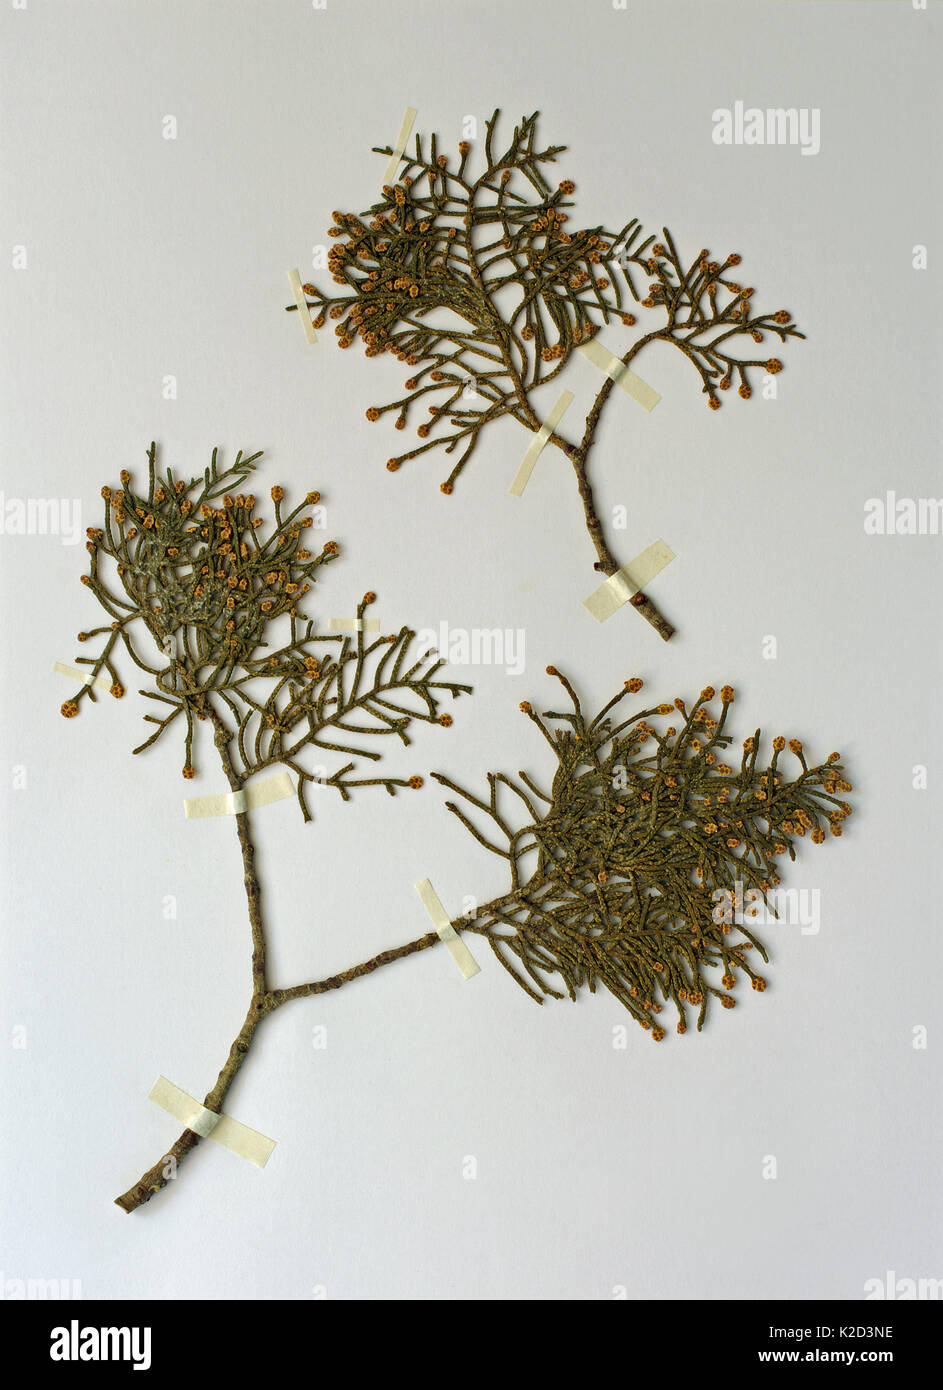 Une feuille d'herbier avec cupressus sempervirens, le cyprès méditerranéen ou cyprès, de la famille des Cupressacées Banque D'Images